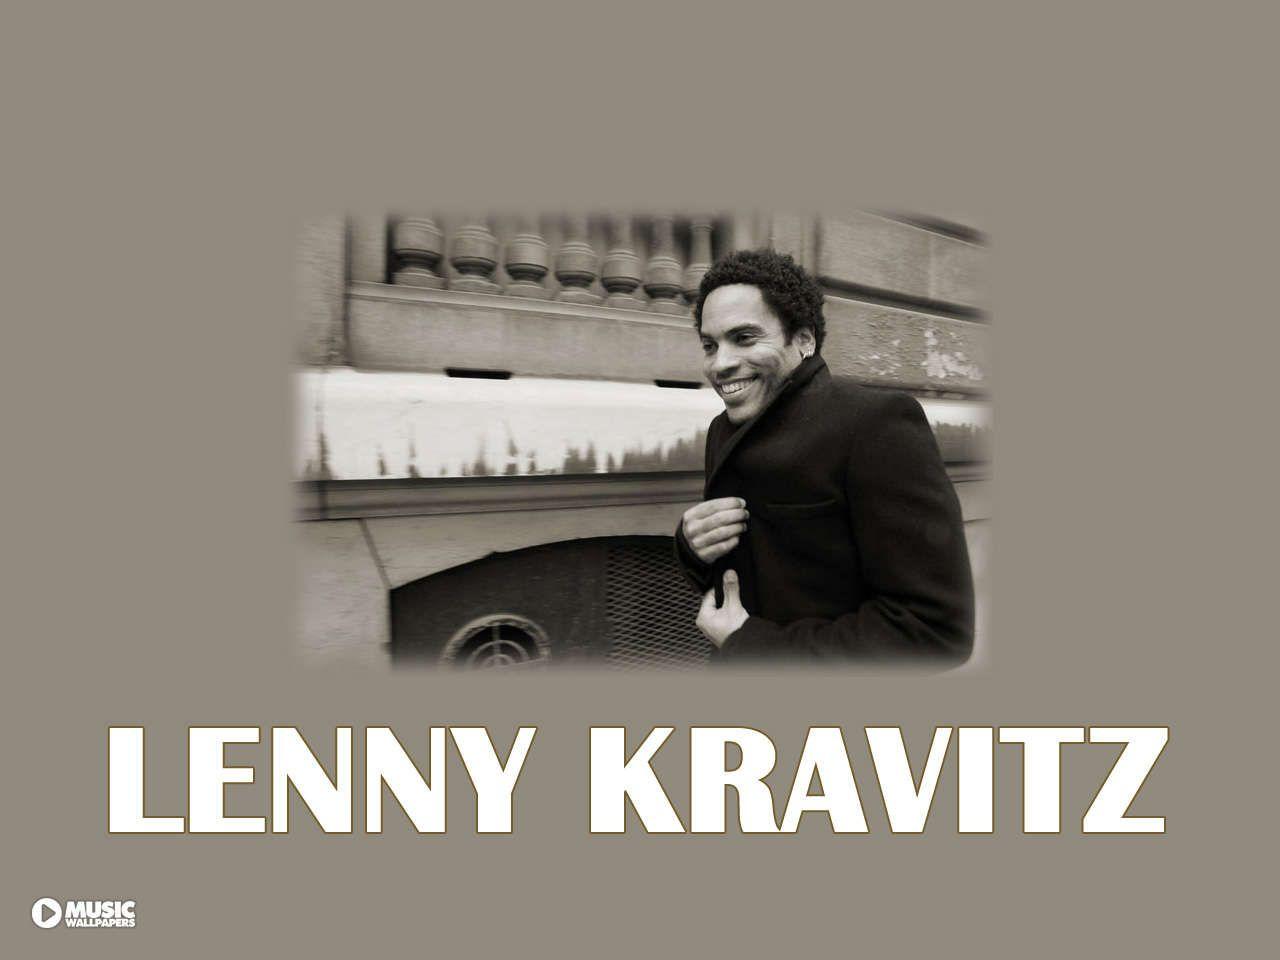 Lenny Kravitz Wallpaper. Music Wallpaper 5 7